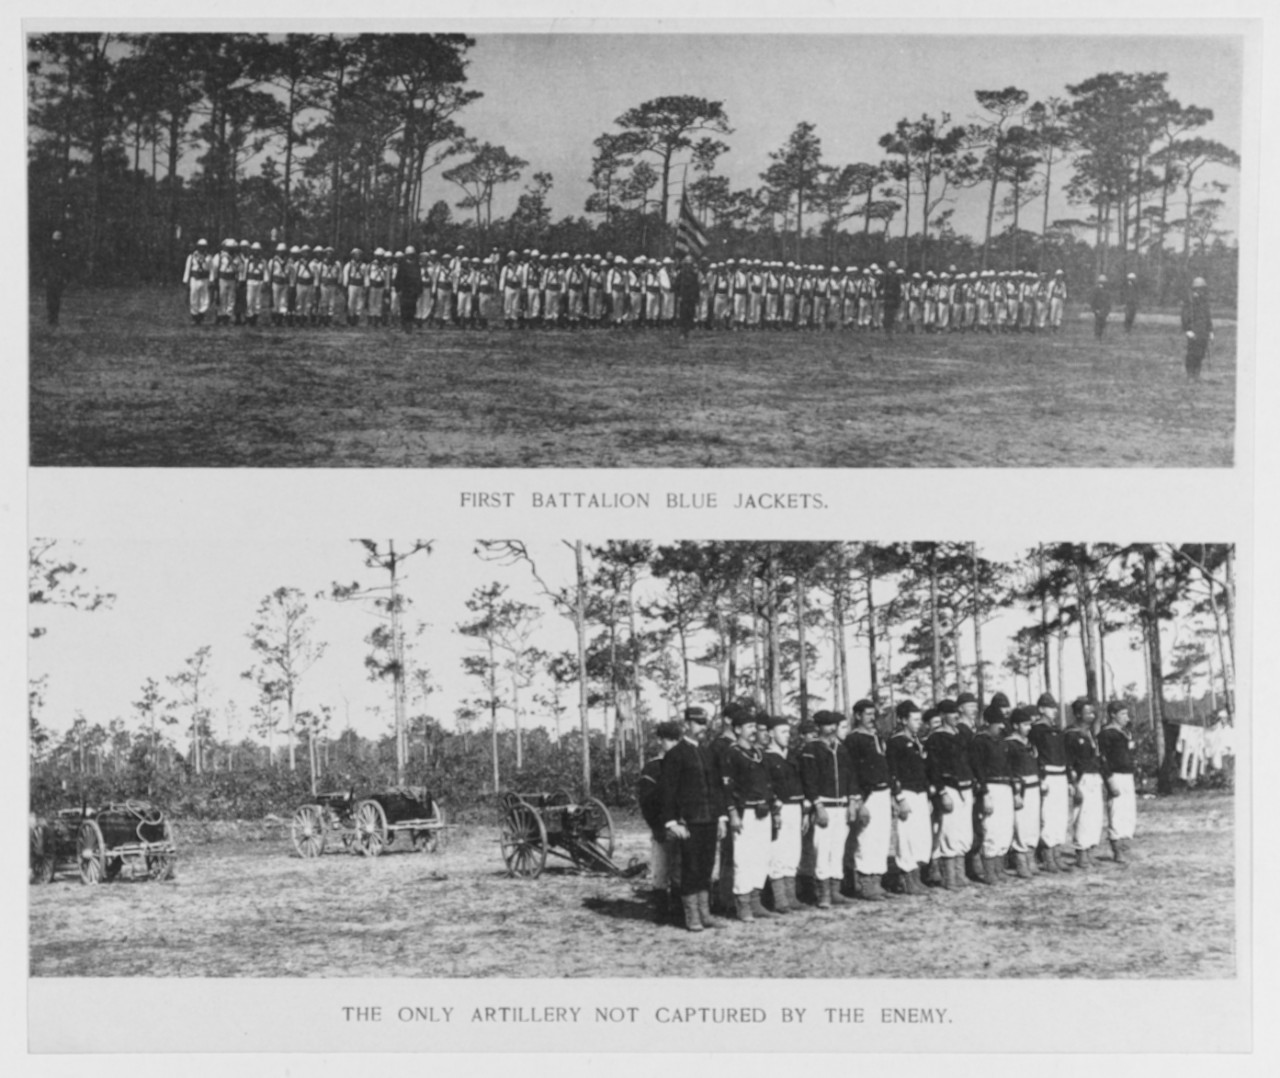 North Atlantic Squadron Encampment, April 1888